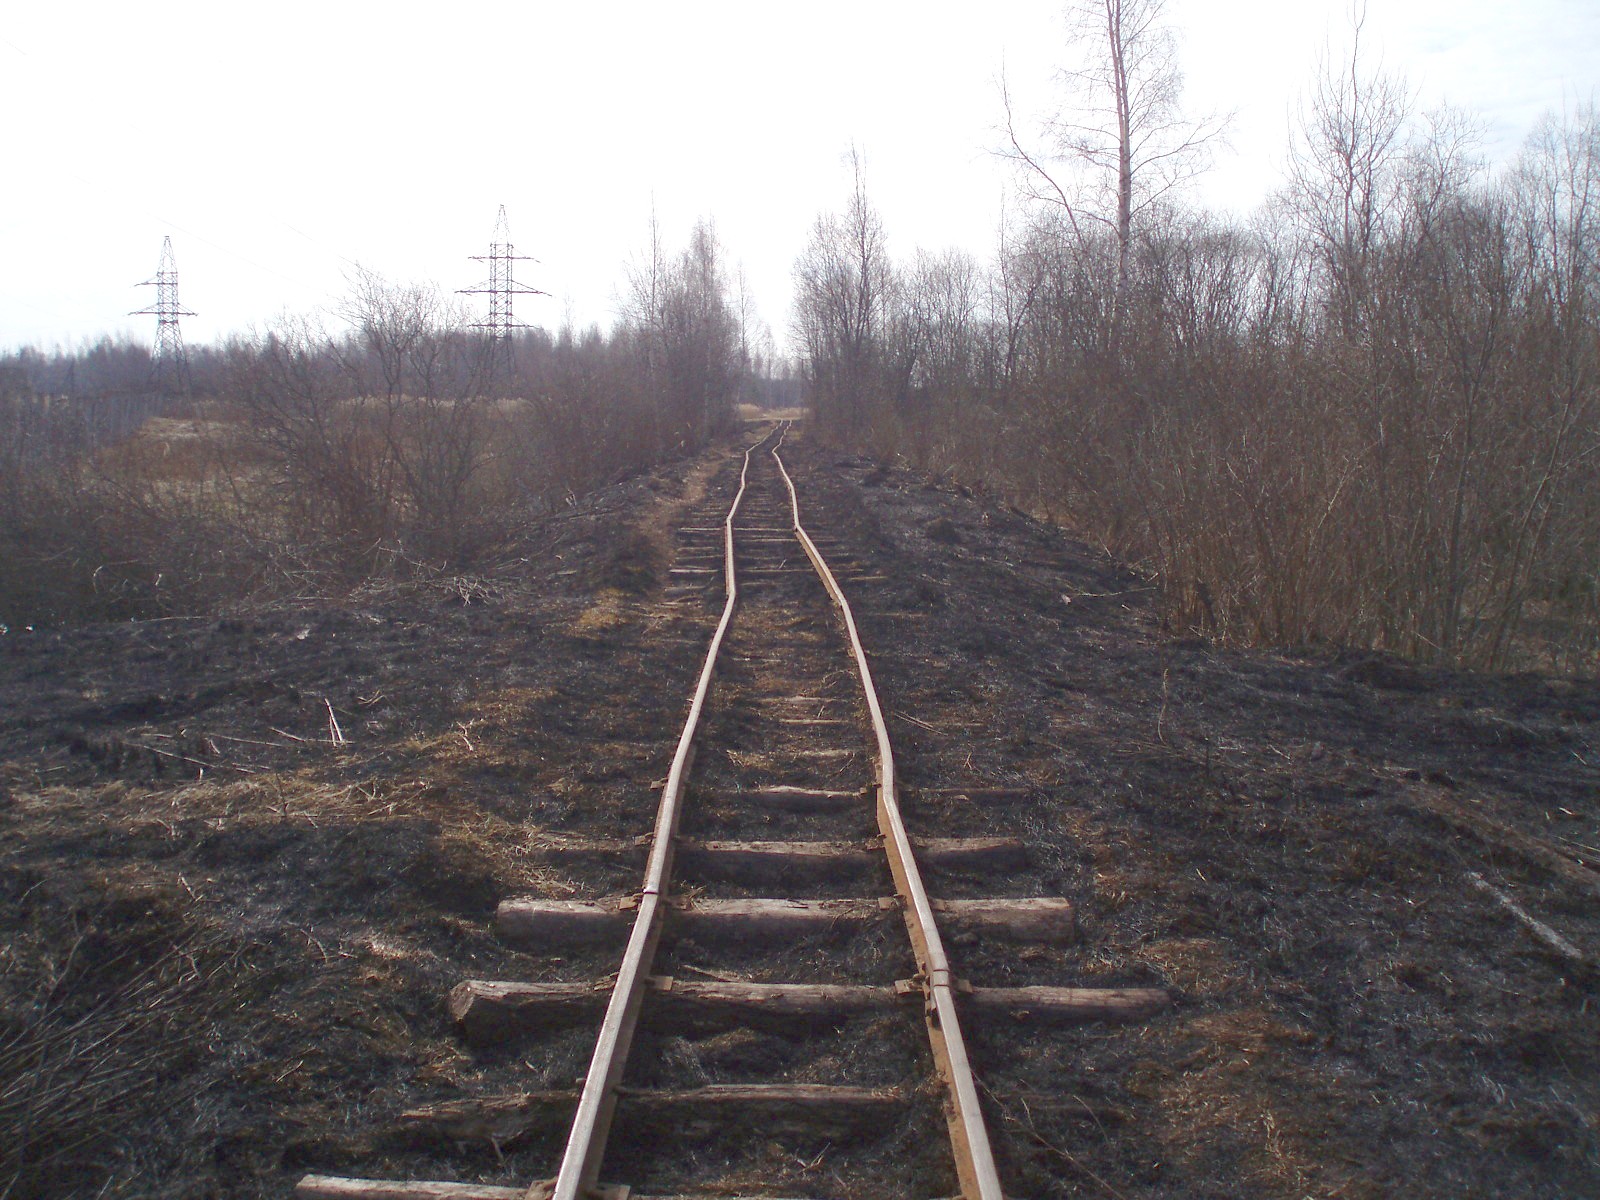 Узкоколейная железная дорога Кимрского торфопредприятия  — фотографии, сделанные в 2007 году (часть 2)